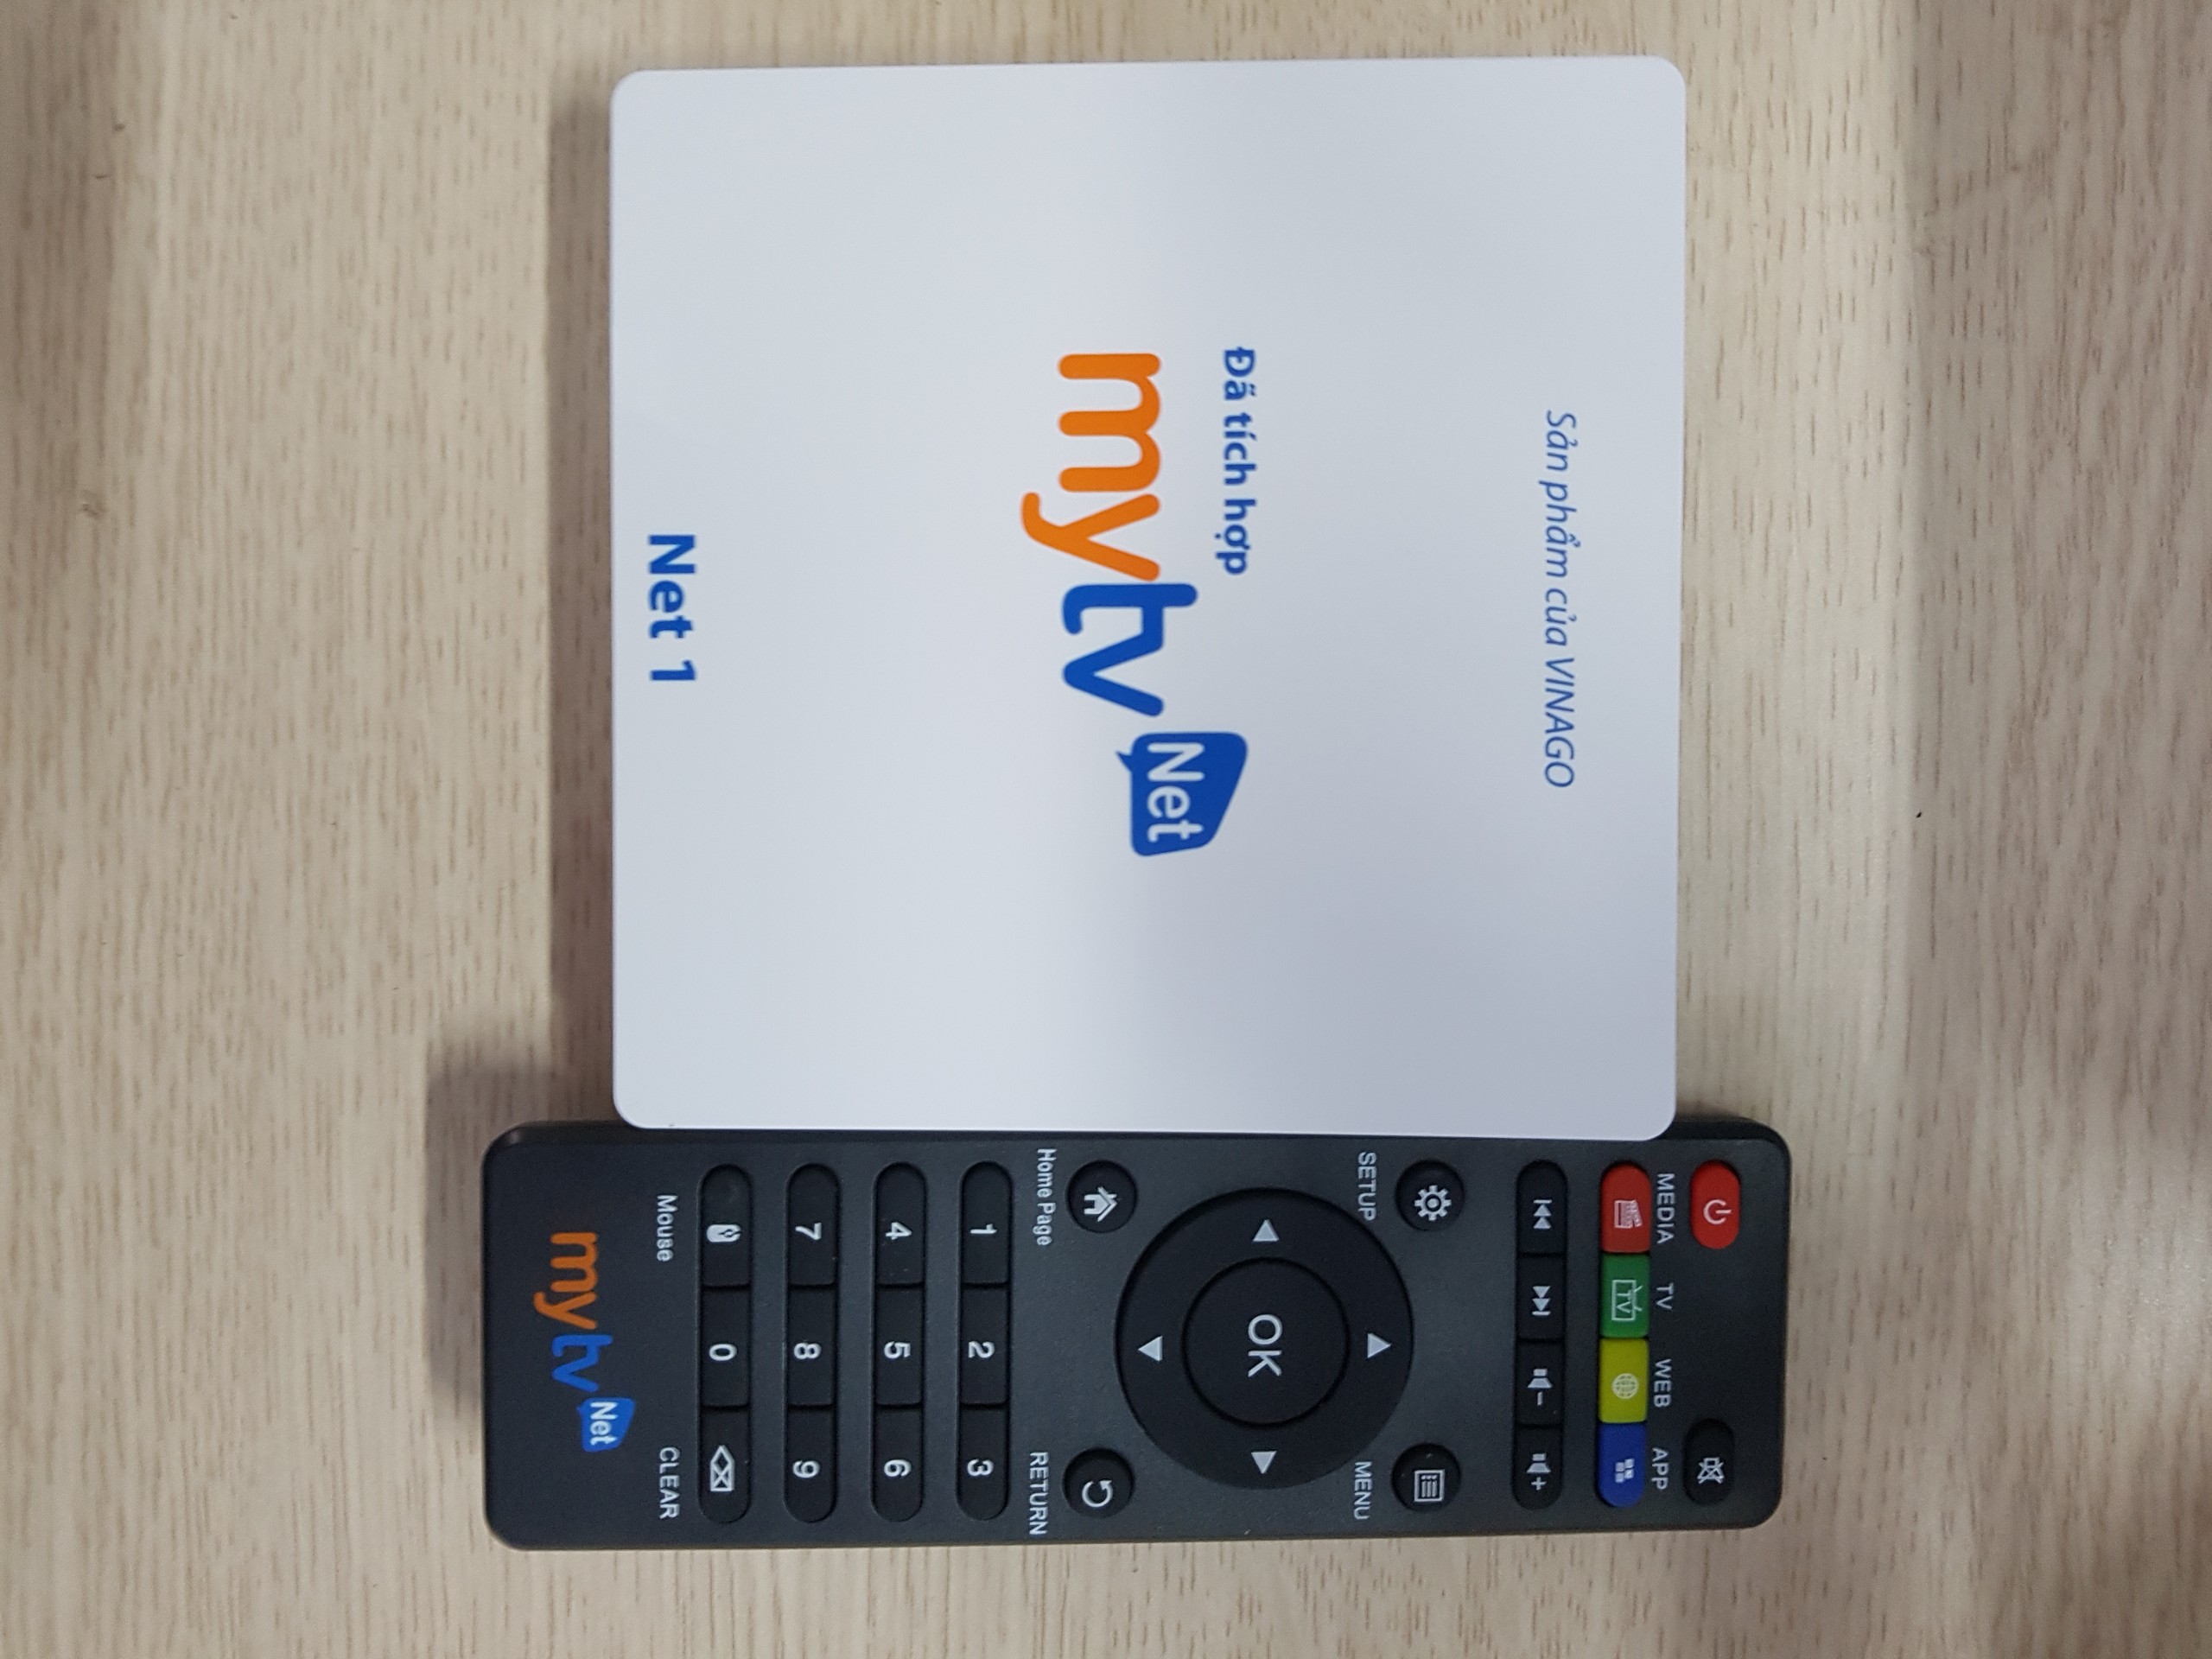 Android MyTV Net RAM 2G- 2020 Tặng Tài khoản HDplay, Android 7.1.2 hỗ trợ điều khiển Giọng nói - Hàng chính hãng